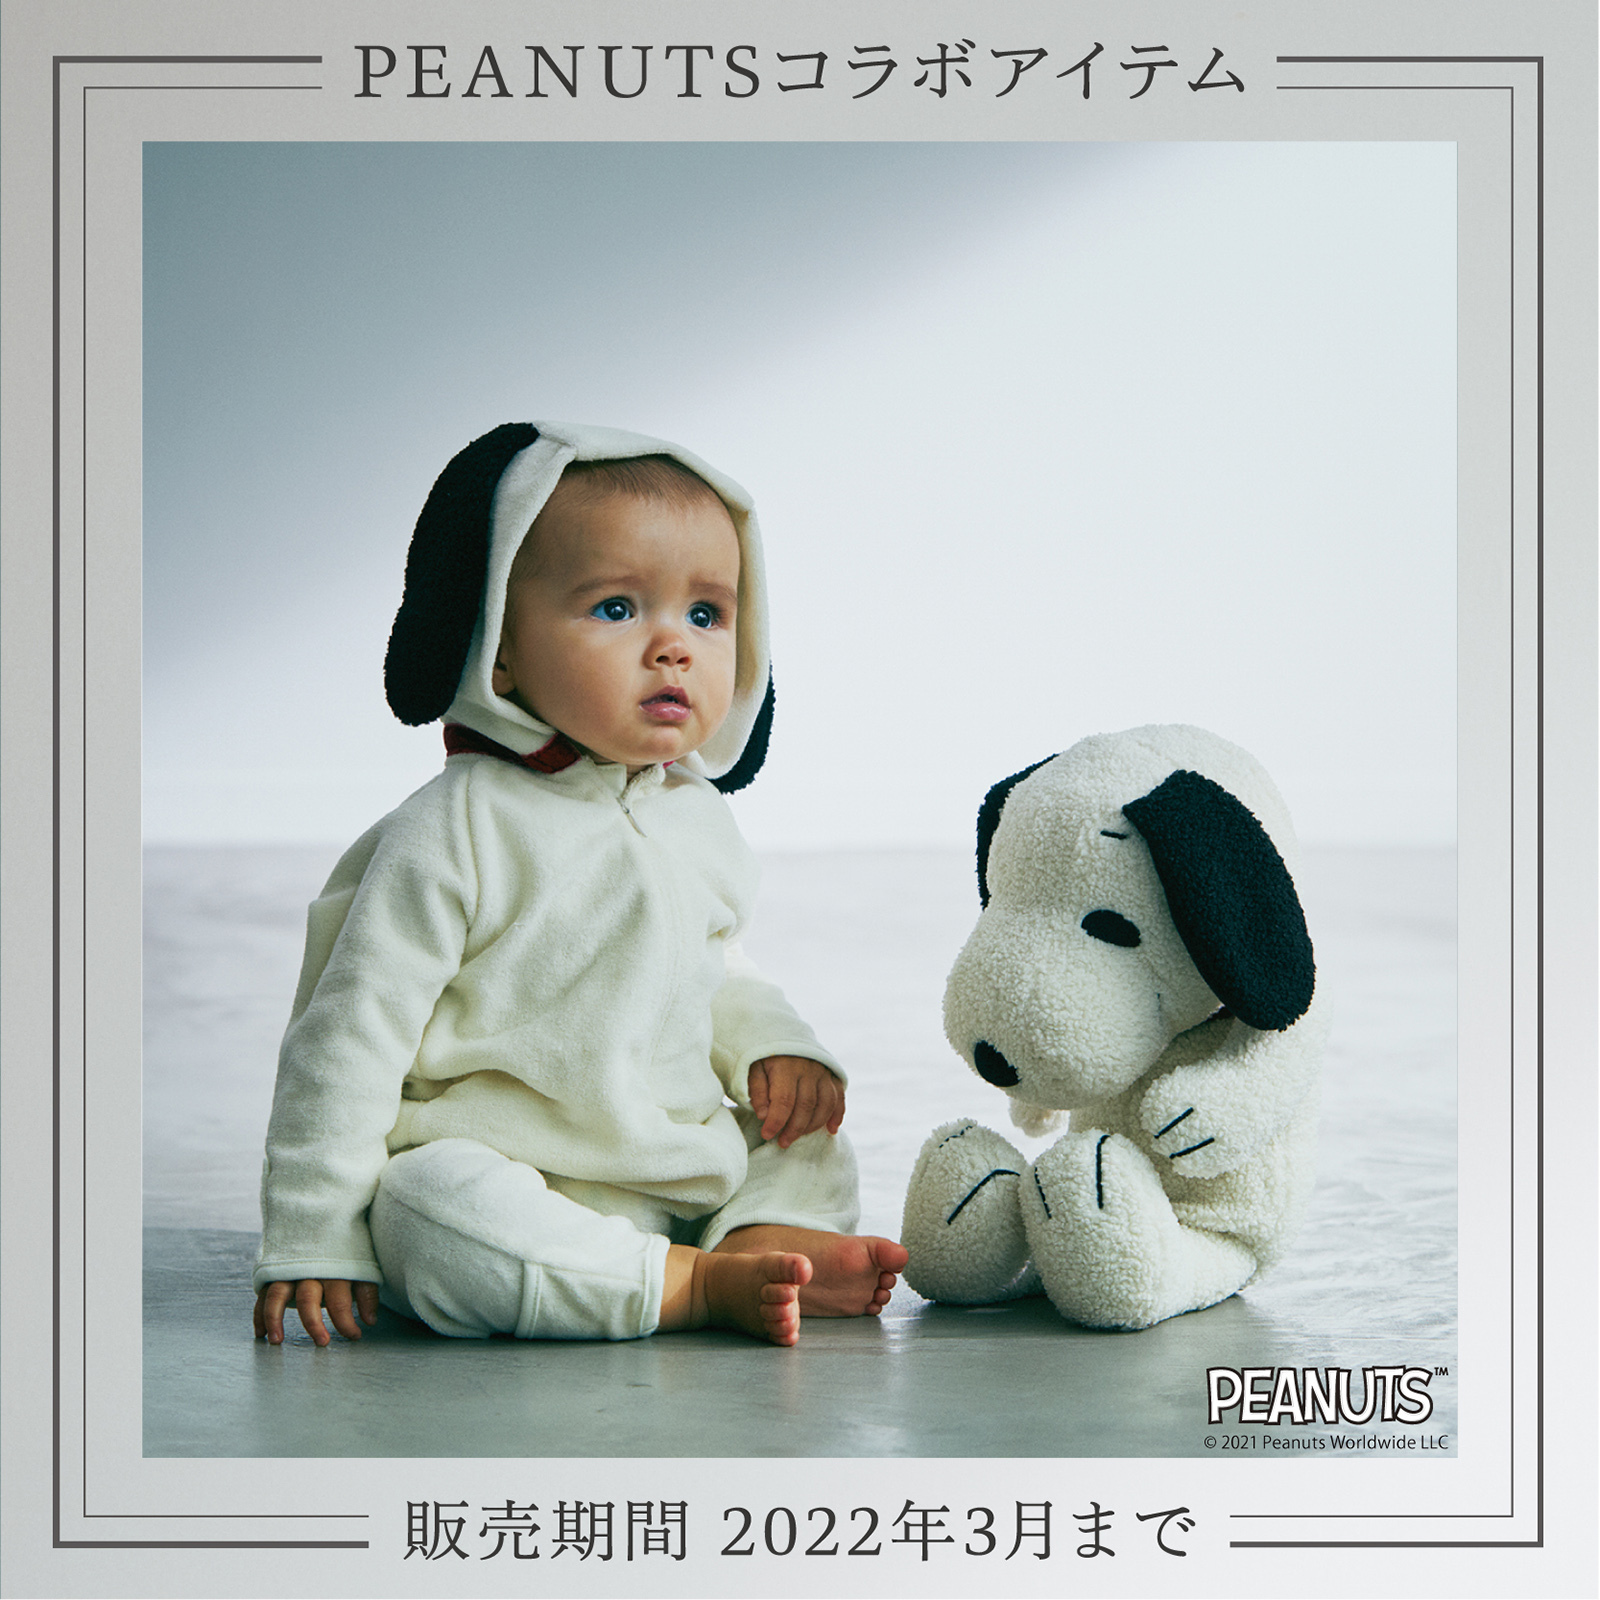 【PEANUTSシリーズ販売終了間近】大人気シリーズを振り返るラストフィーチャー 2.7(MON.)